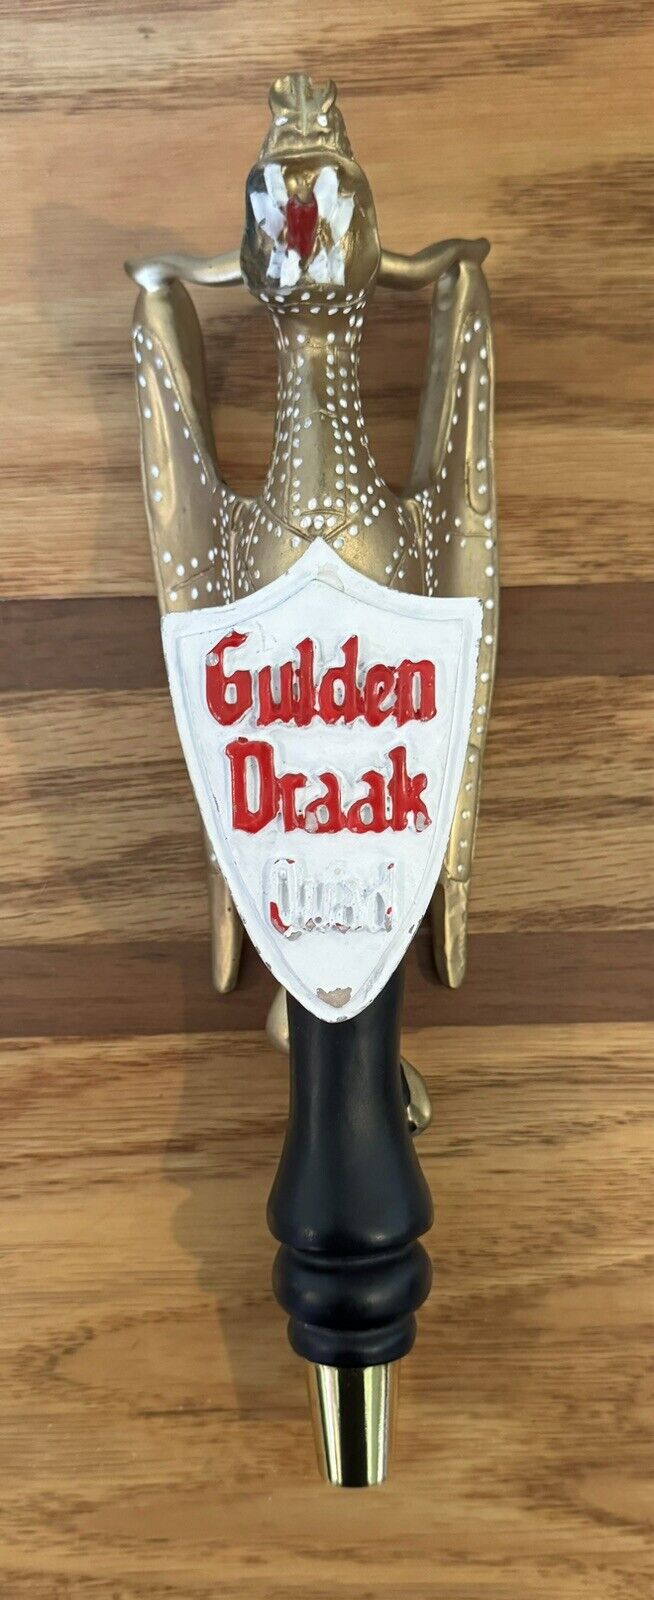 Gulden Draak Quad Belgian Beer Tap Handle Pull 10”